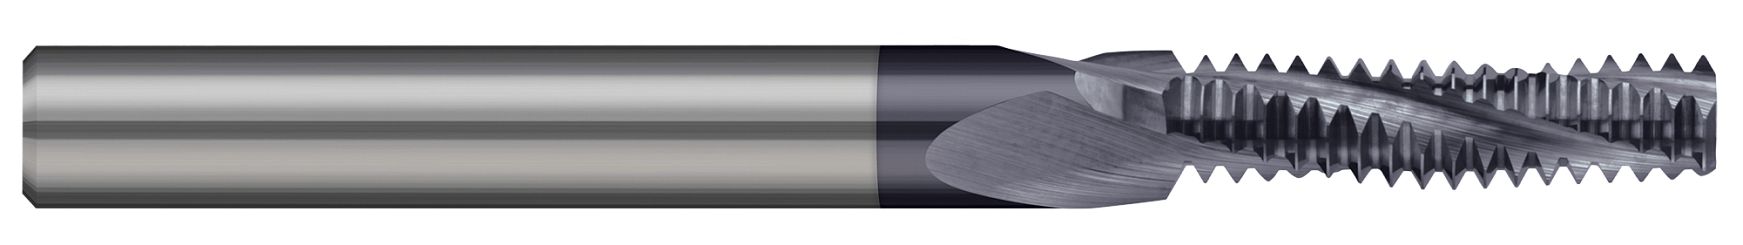 螺纹铣削刀具 - 多种形式 - 长长笛 - 联合螺纹